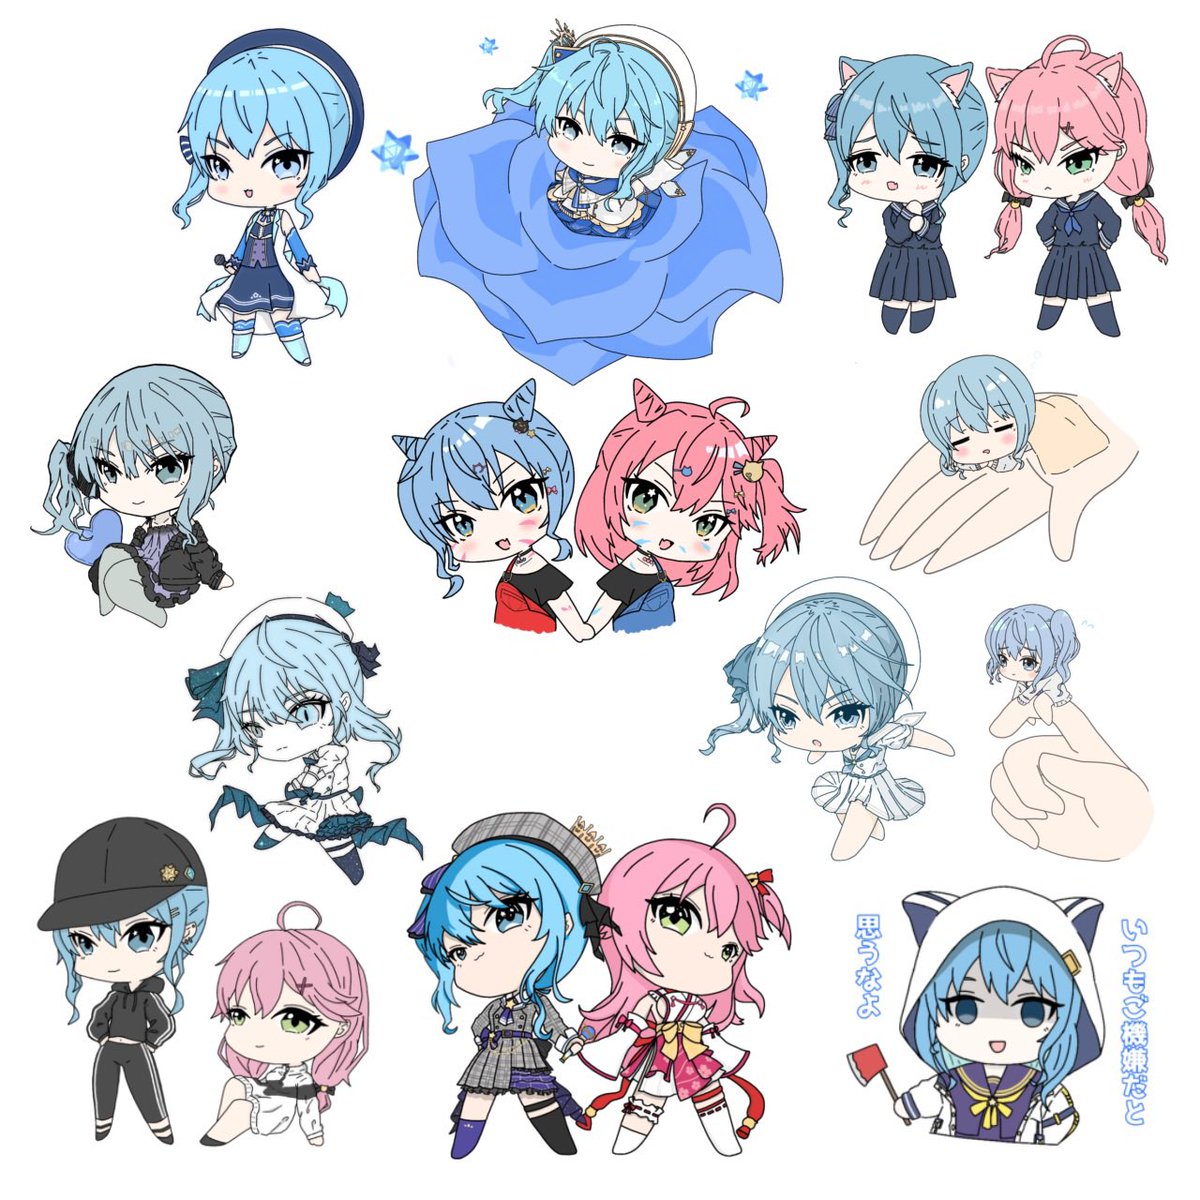 hoshimachi suisei ,sakura miko multiple girls hat blue hair pink hair hood animal ears 2girls  illustration images